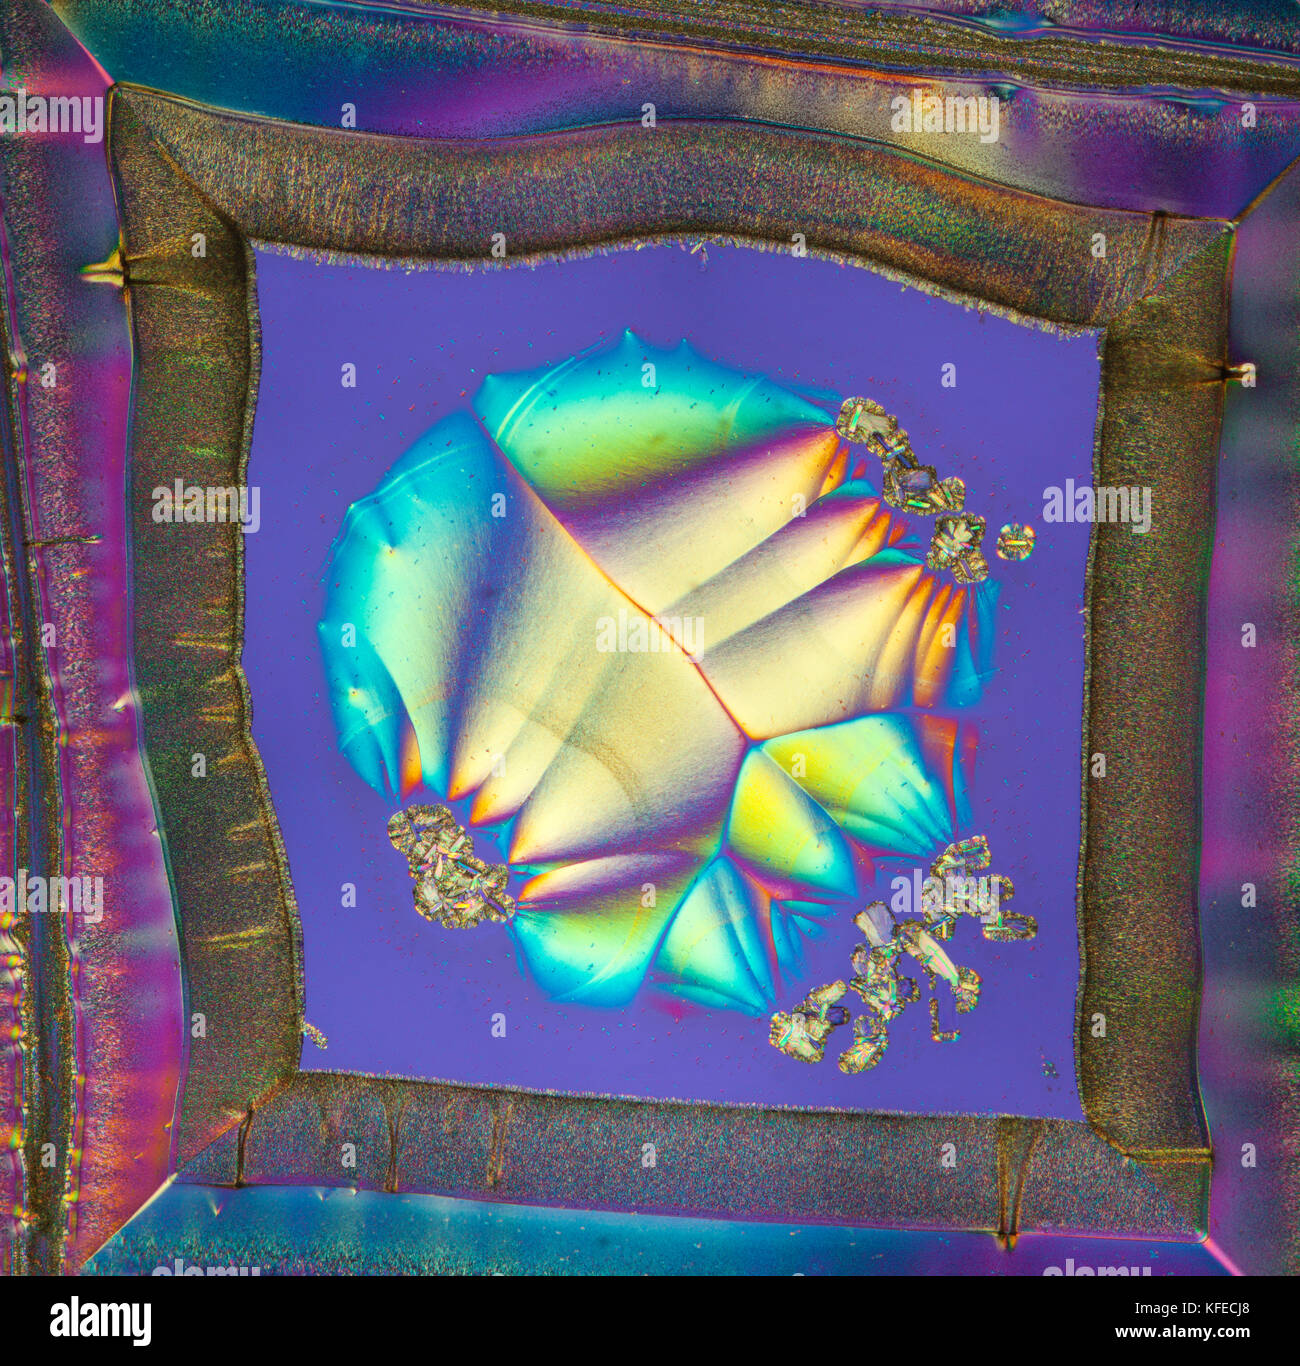 La vitamine C, les cristaux à polarisation croisée spectaculaire diapositive en utilisant un retard plaque supplémentaire, photomicrographie Banque D'Images